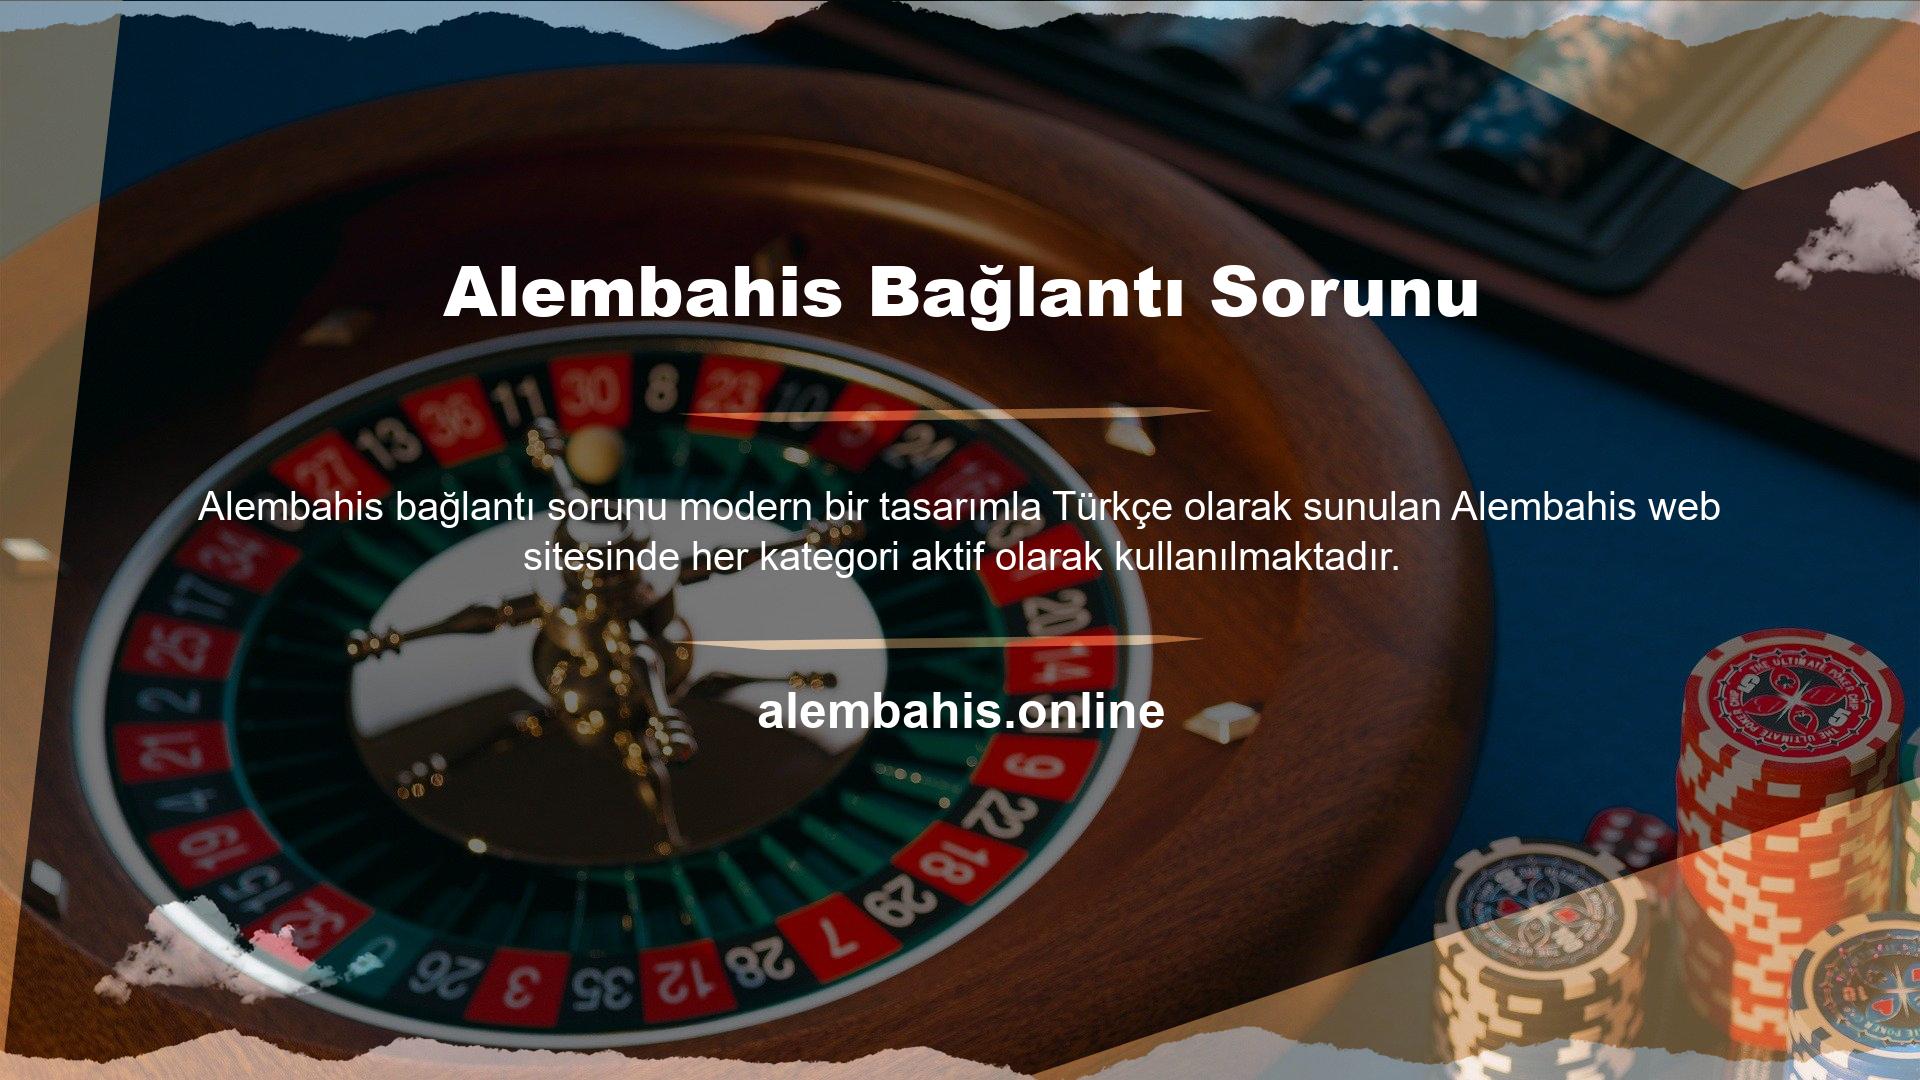 Temiz, sade ve zarif bir görünümden yana olan Alembahis markası, ülkemizdeki yasal yaptırımlar nedeniyle her zaman yabancı bir oyun firması olarak görülmüştür